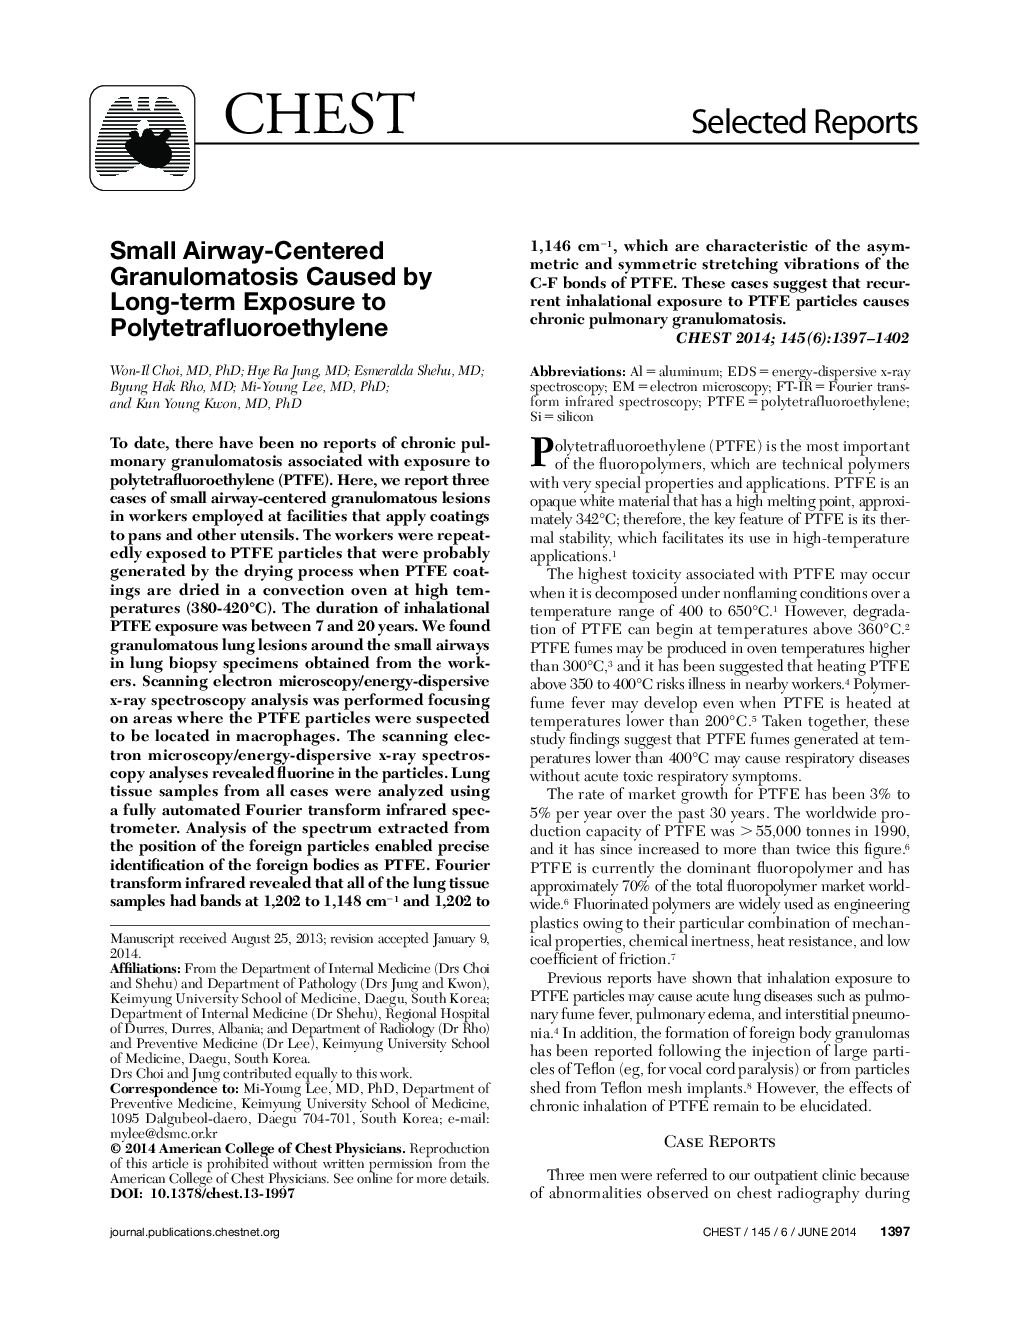 Small Airway-Centered Granulomatosis Caused by Long-term Exposure to Polytetrafluoroethylene